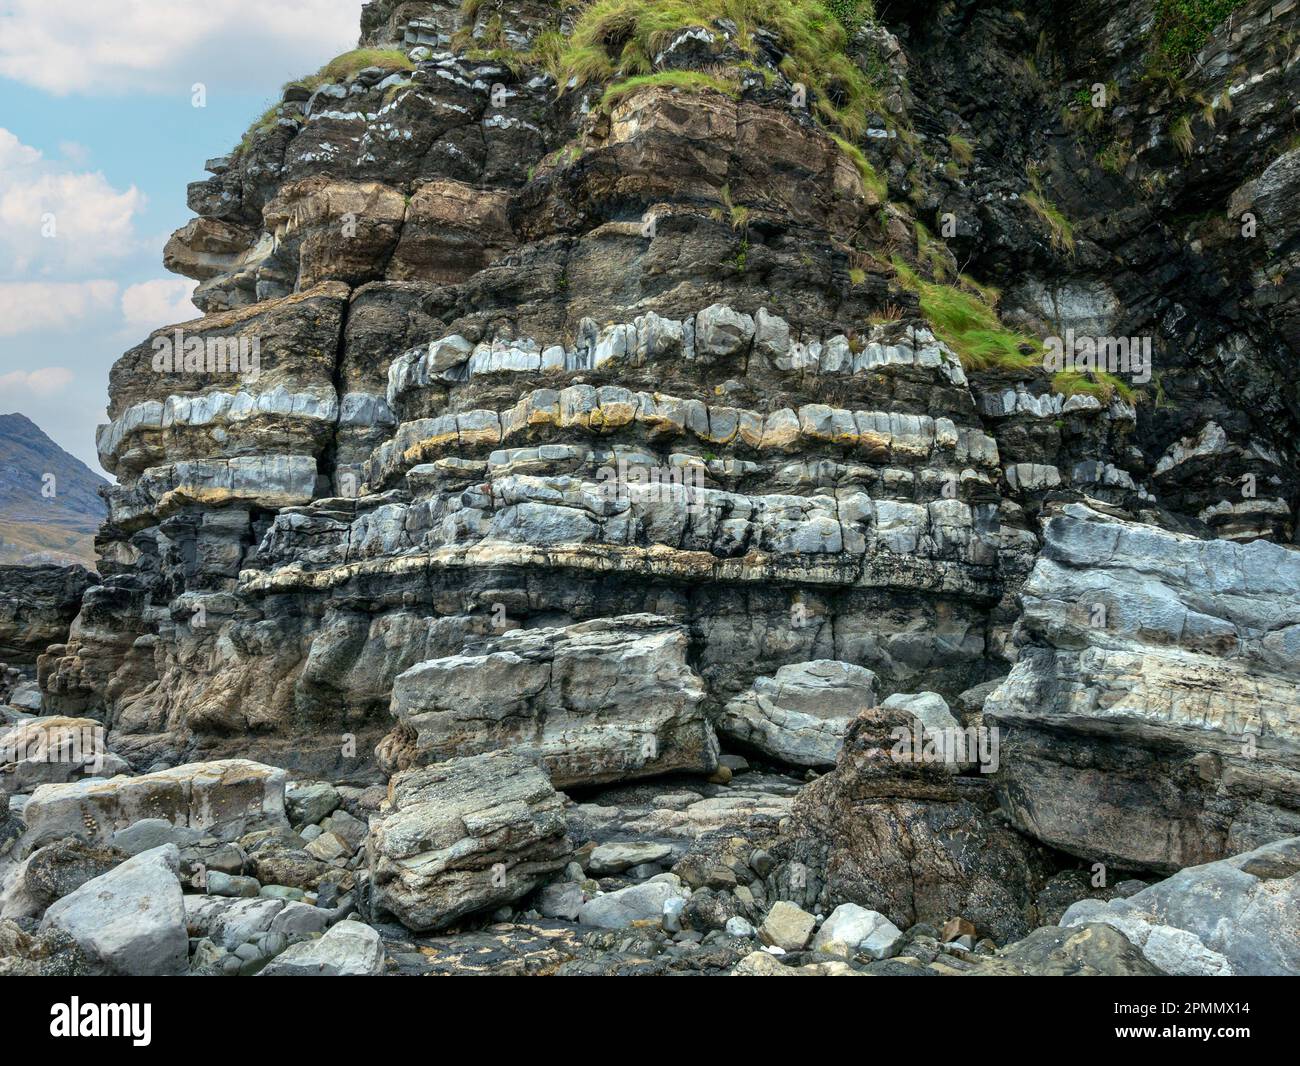 Couches de roches sédimentaires baguées de grès, siltstone et mudstone dans la formation de schiste de Staffin, baie de Scaladal, île de Skye, Écosse, Royaume-Uni Banque D'Images